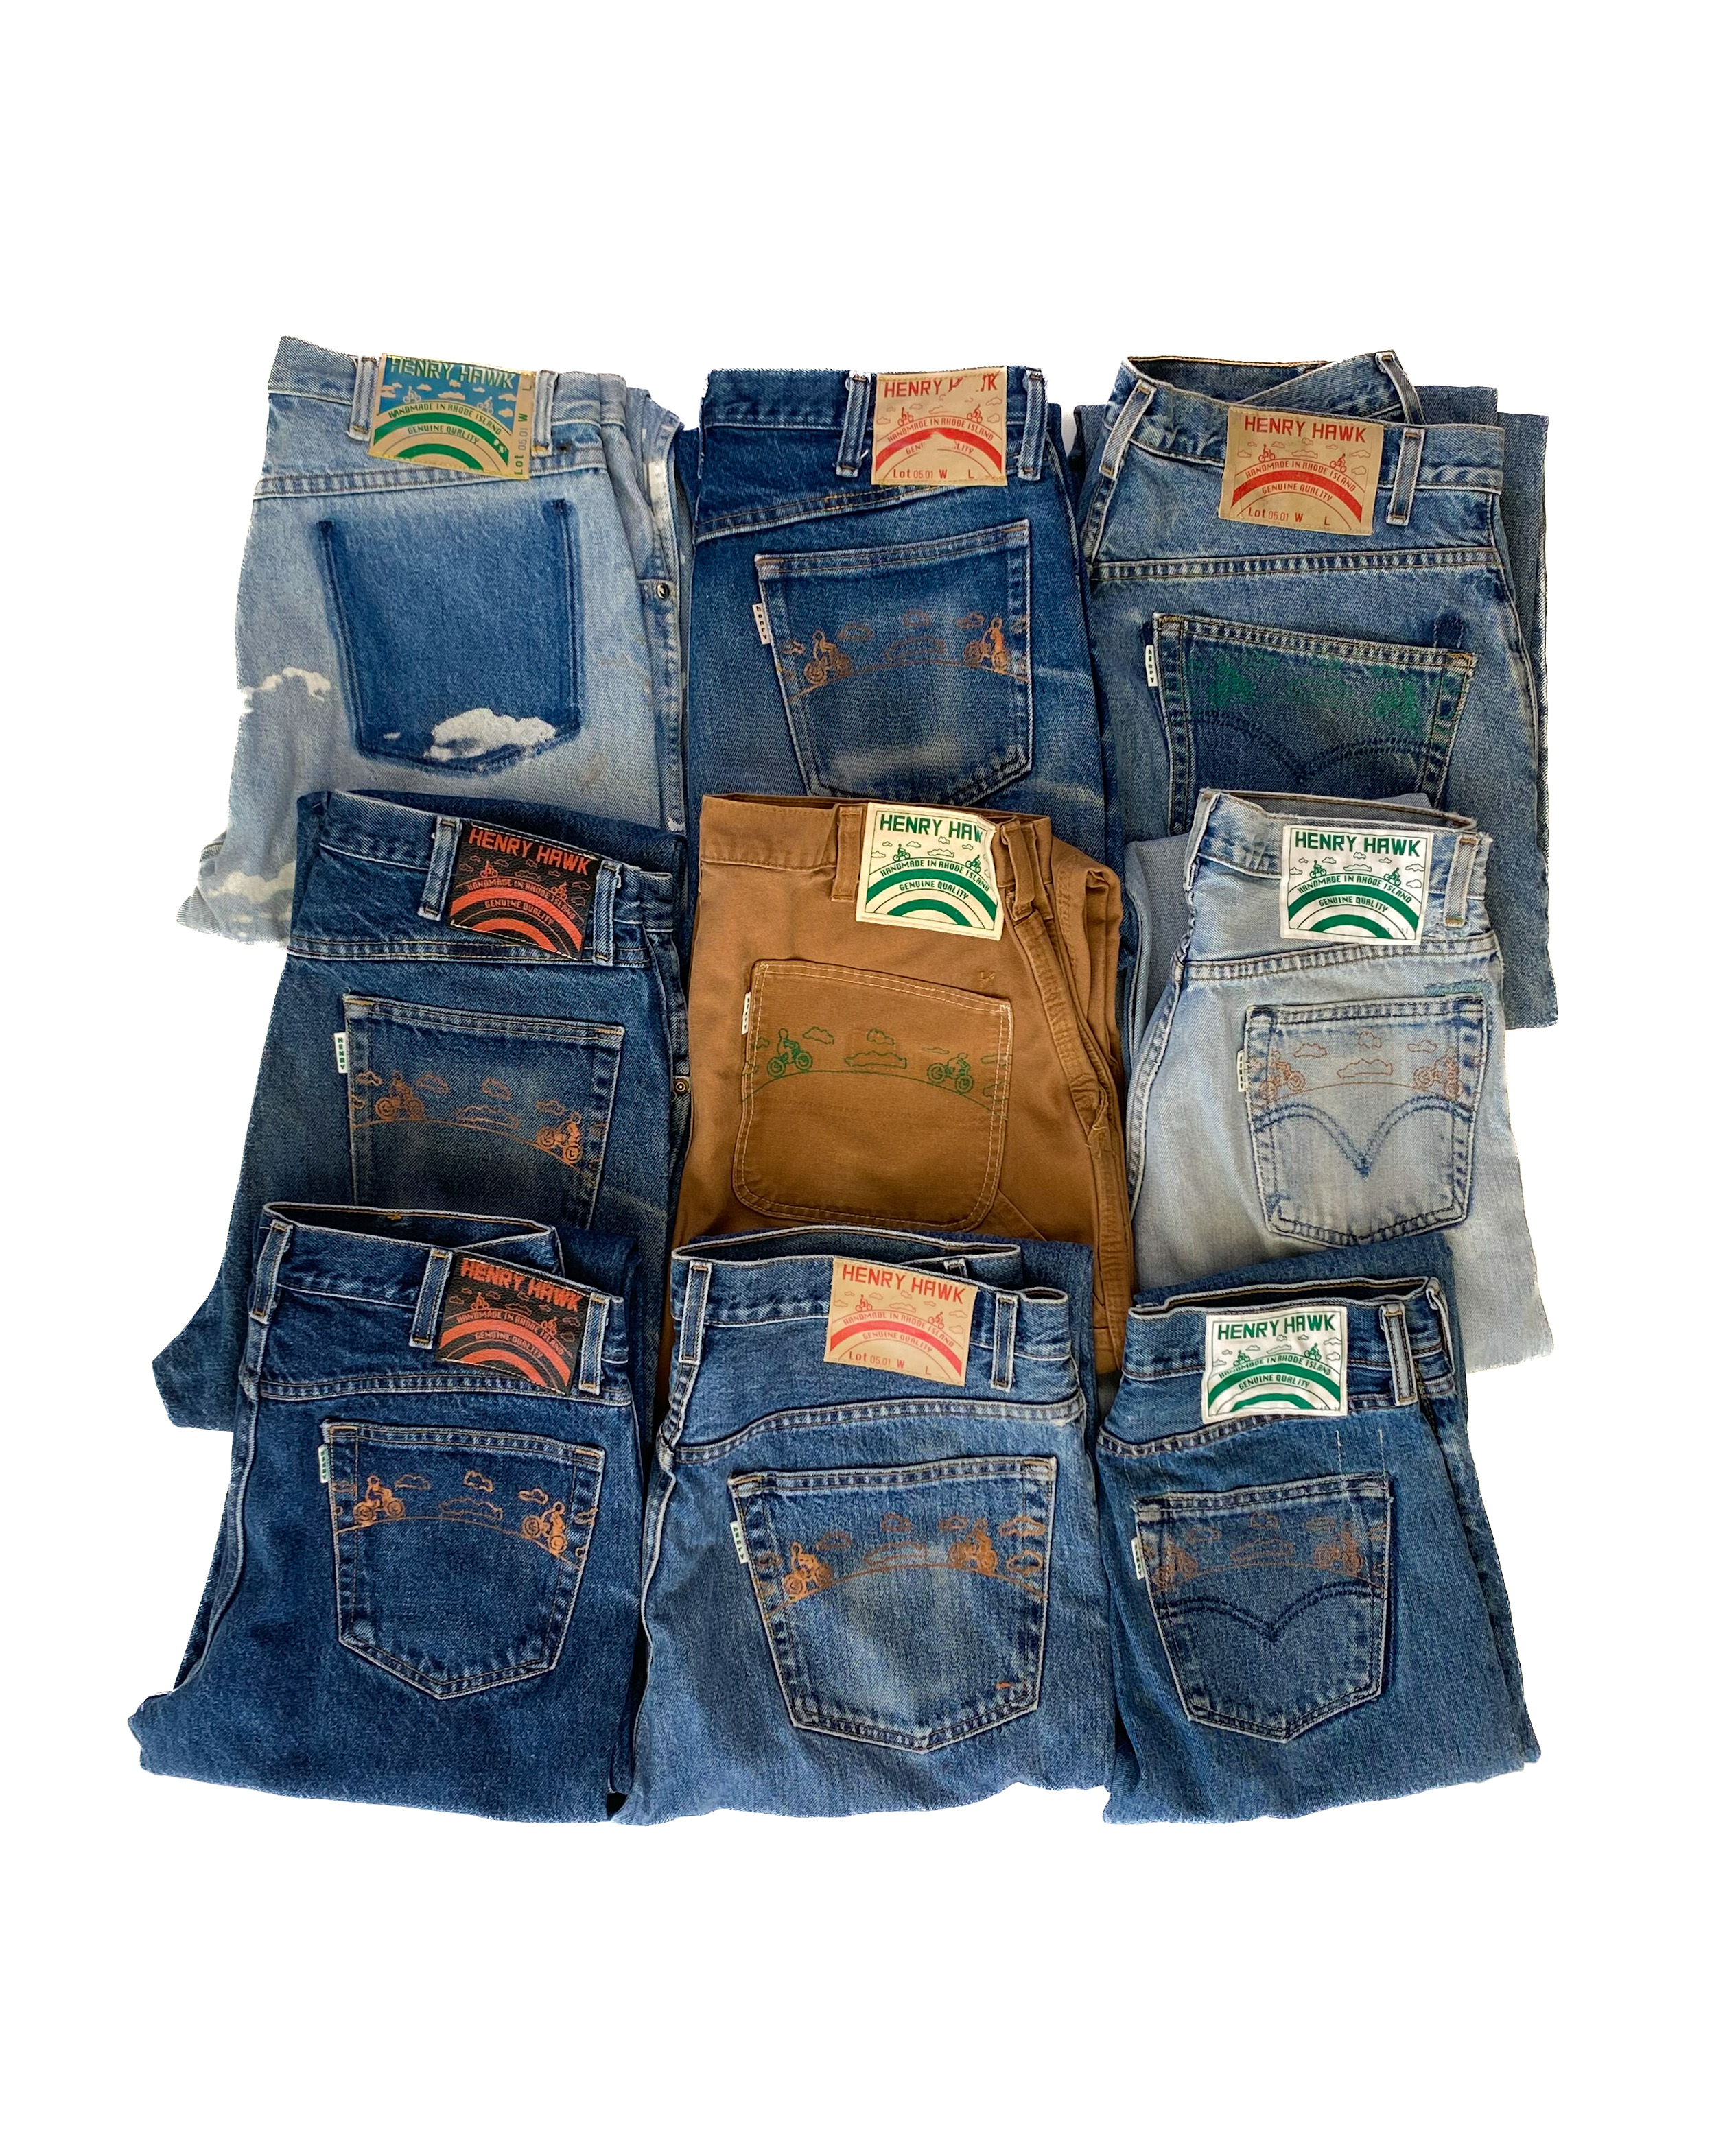 SHOP - jeans Henry Hawk Refurbished